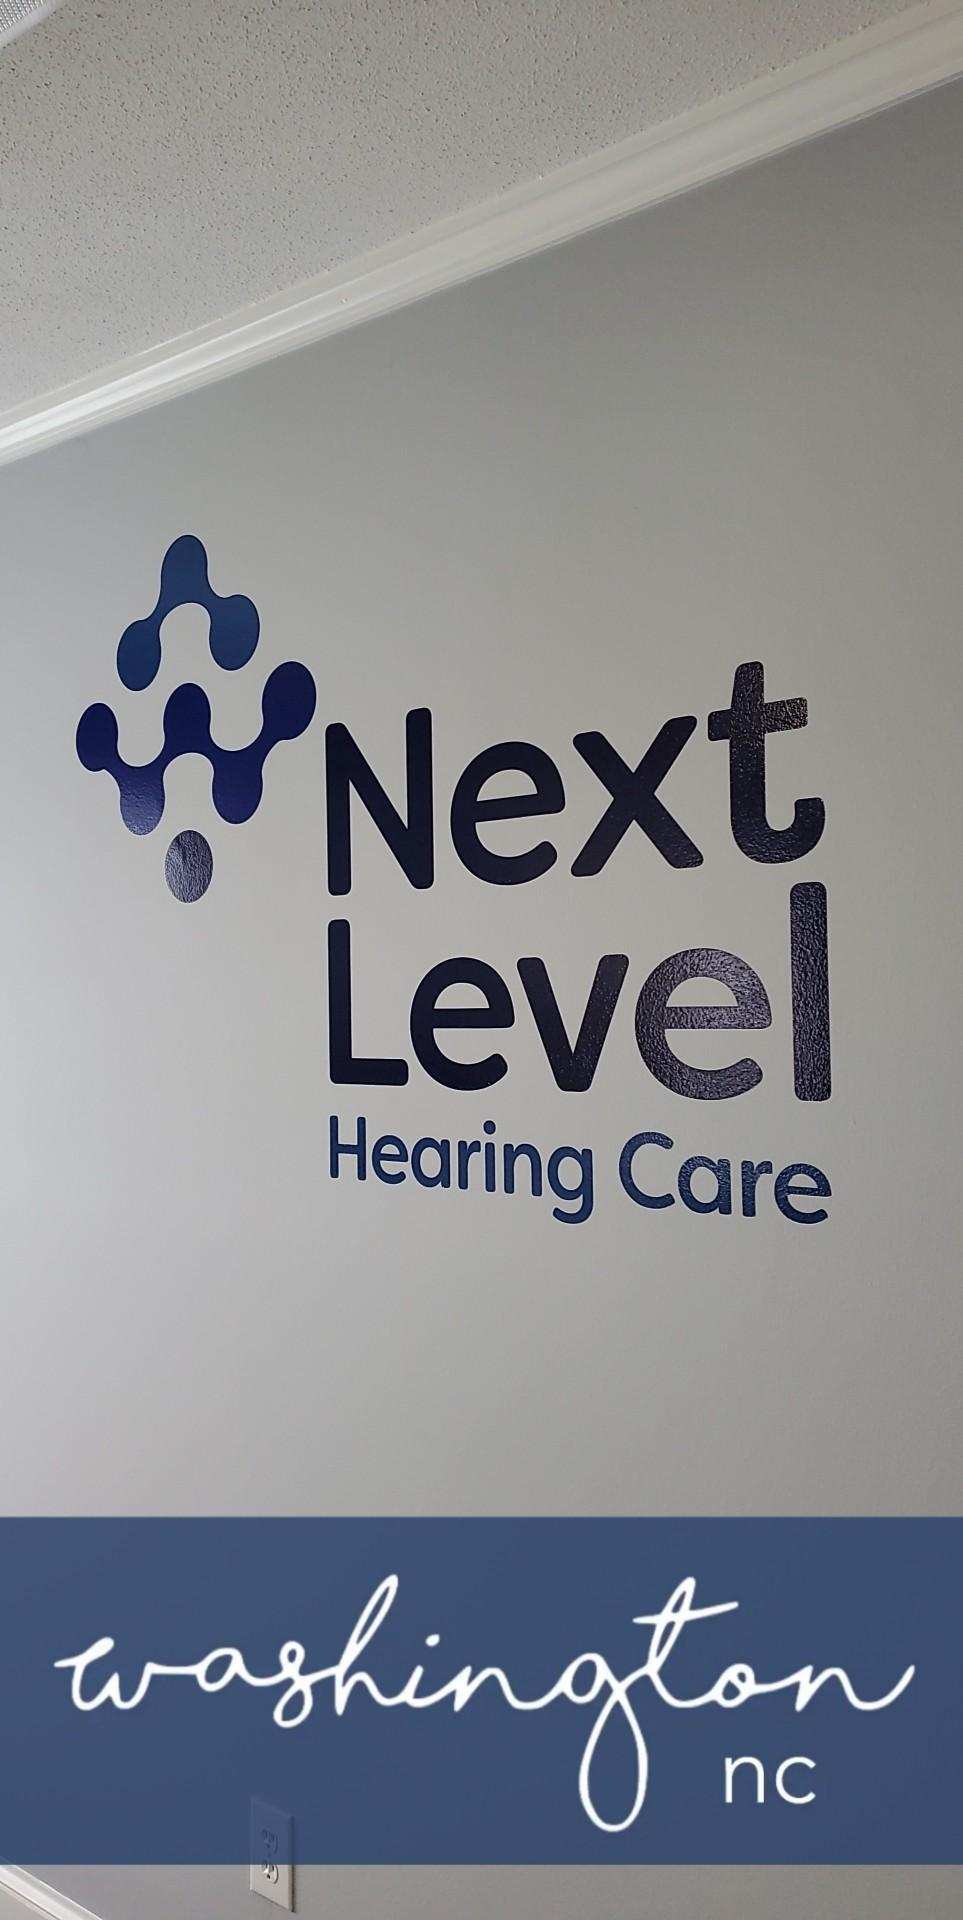 Next Level Hearing - Washington, NC signage